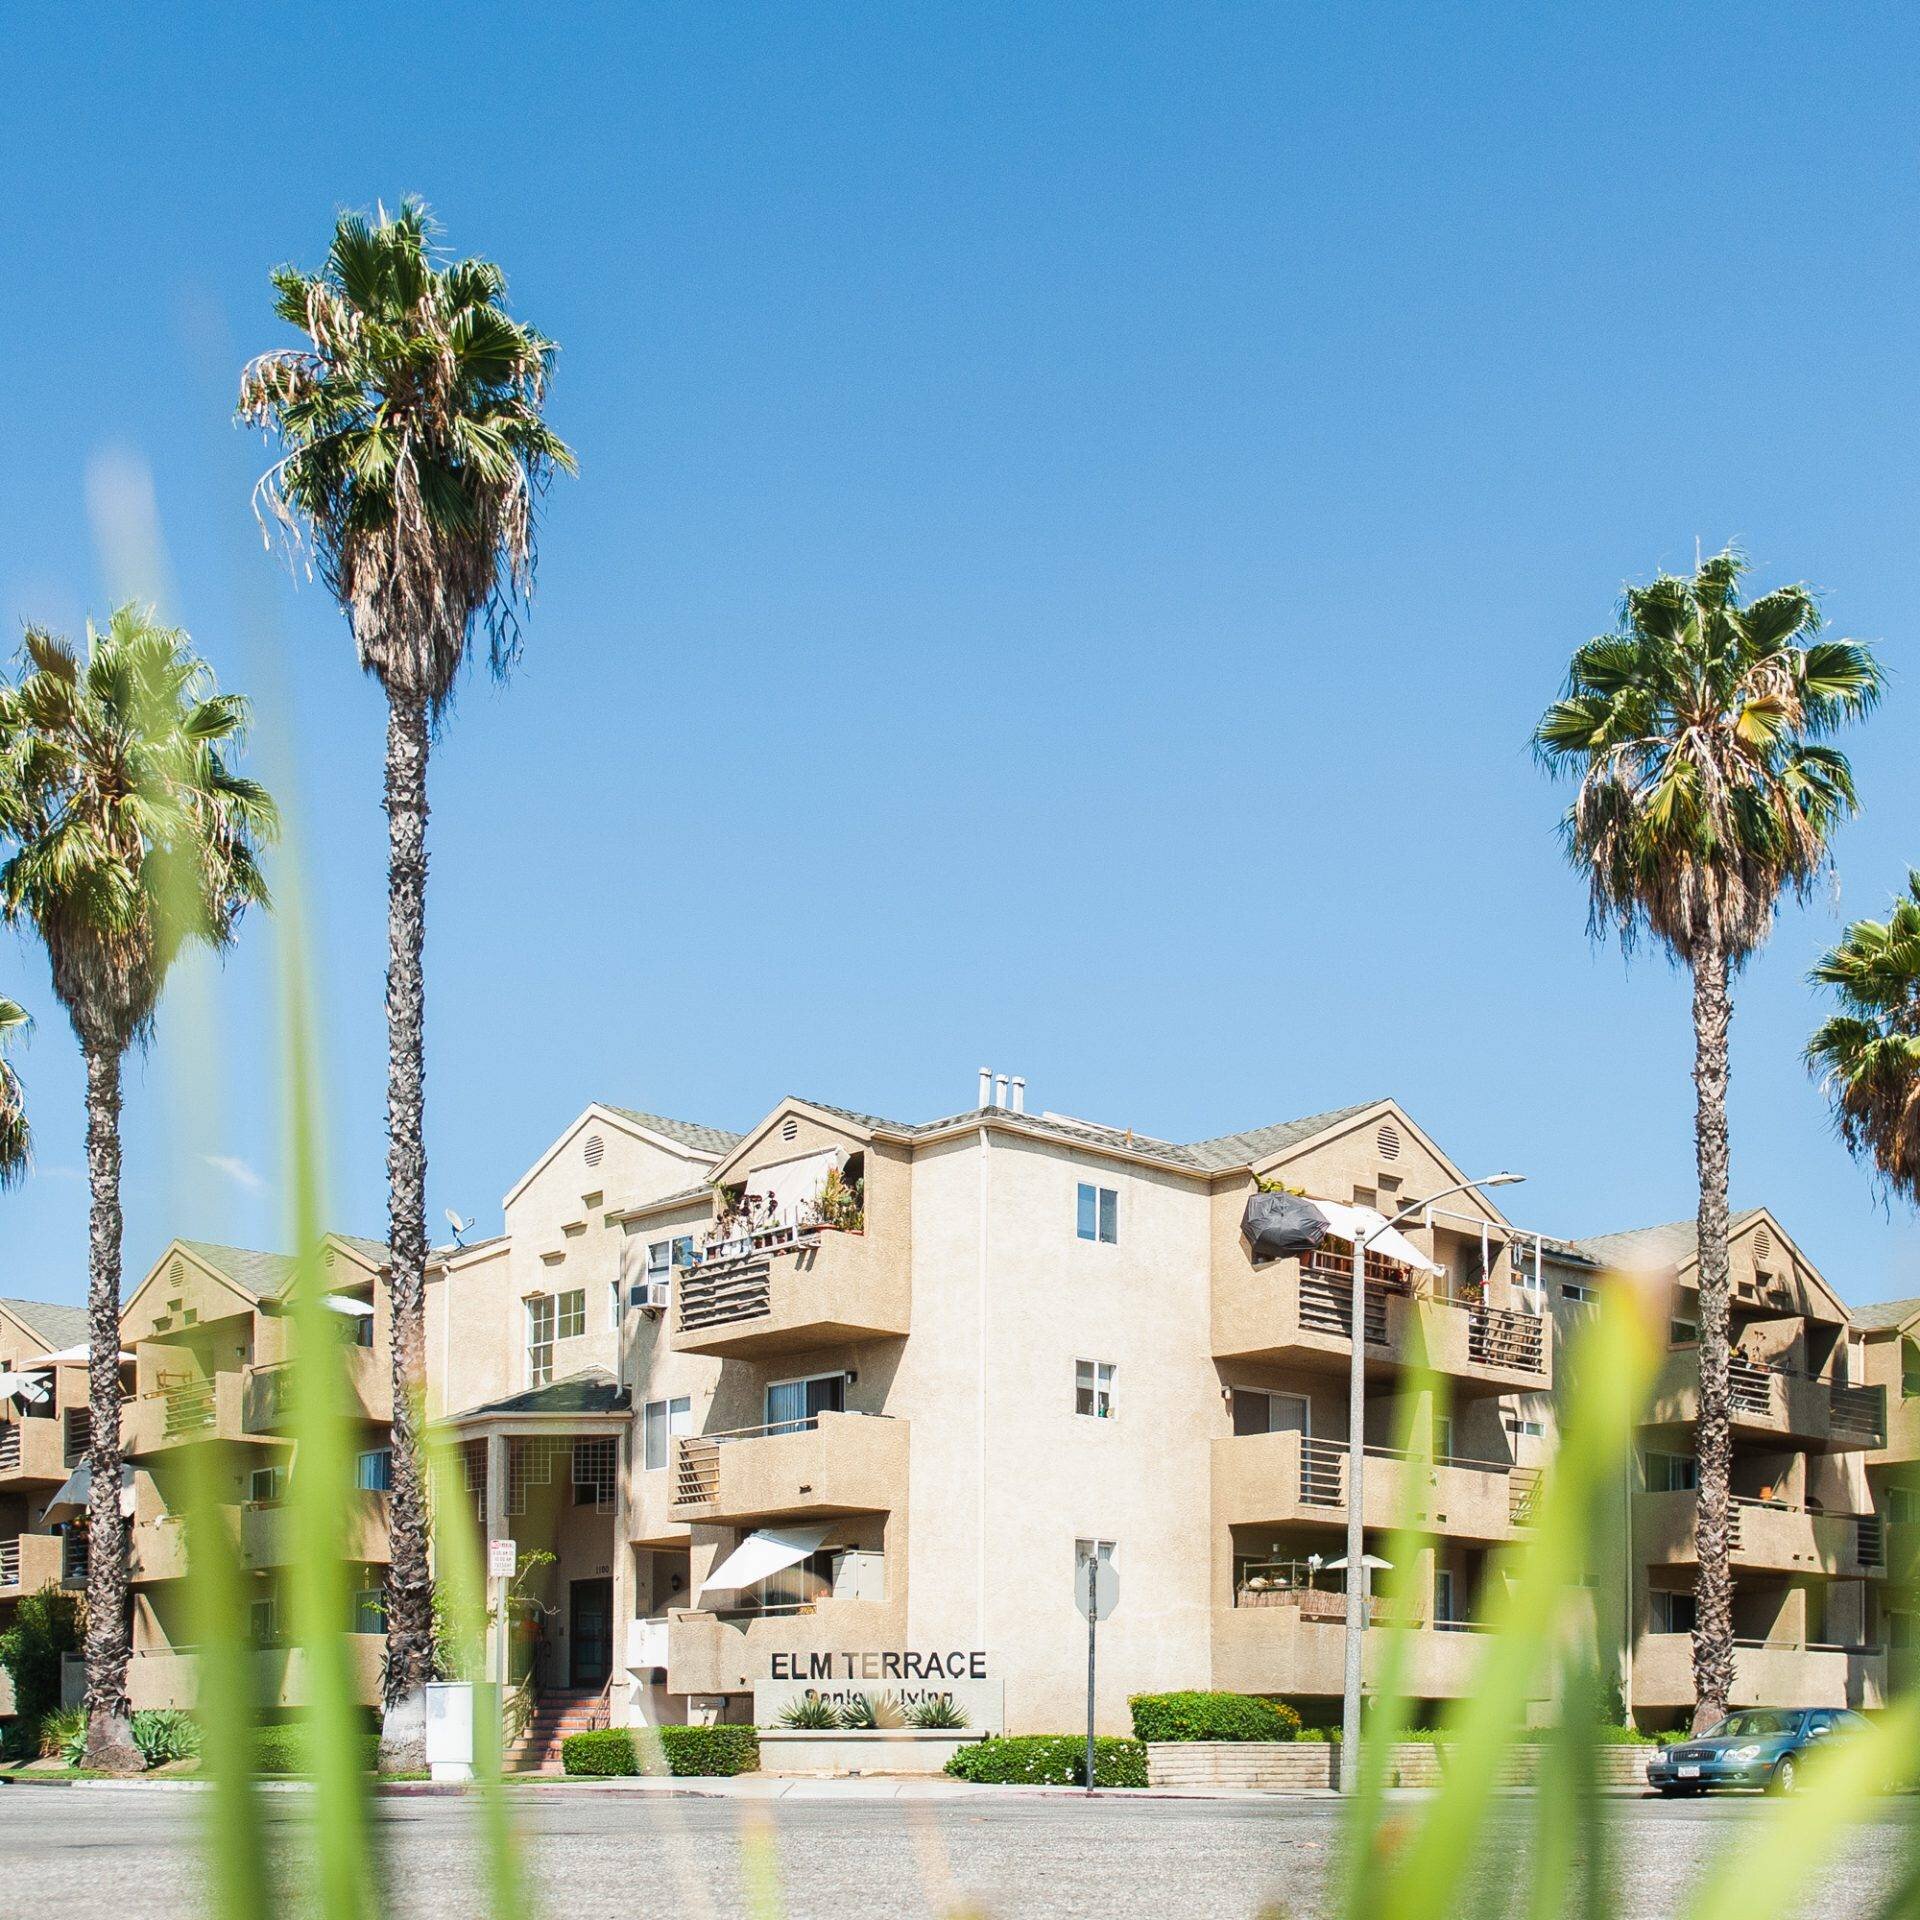 榆树梯田公寓-榆树梯田是一个安静的社区老年人, 55岁及以上, 位于长滩, 加州. 这个公寓大楼有三层楼，里面都是舒适的一居室公寓, 并且在整个建筑的前提下都适合轮椅使用.